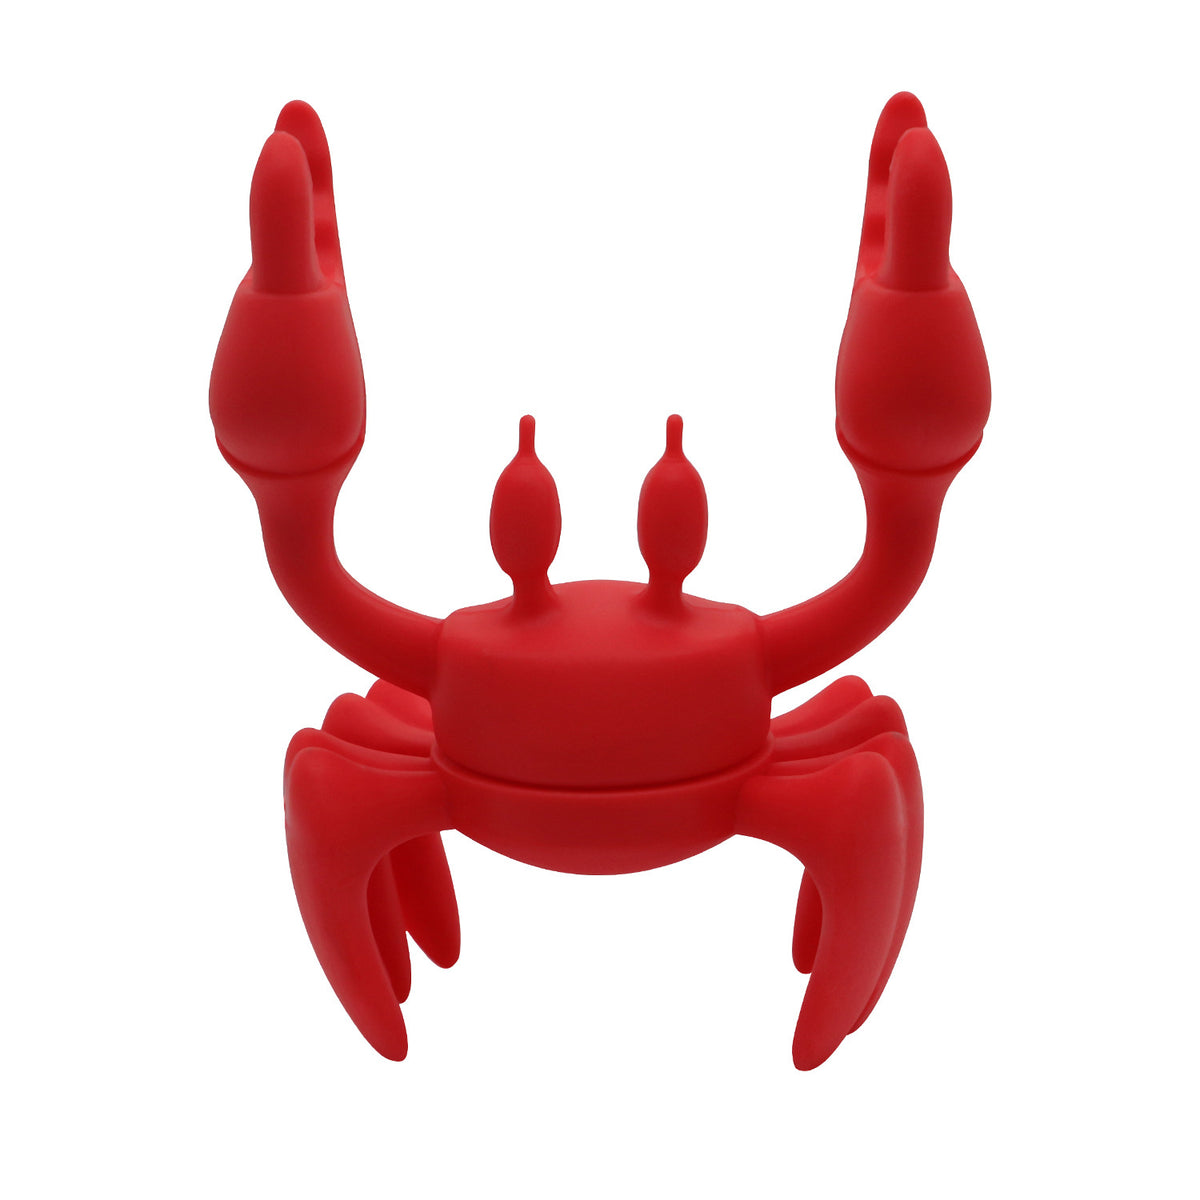 【客製化】螃蟹矽膠餐具架 | 禮品、贈品專業客製禮贈品顧問